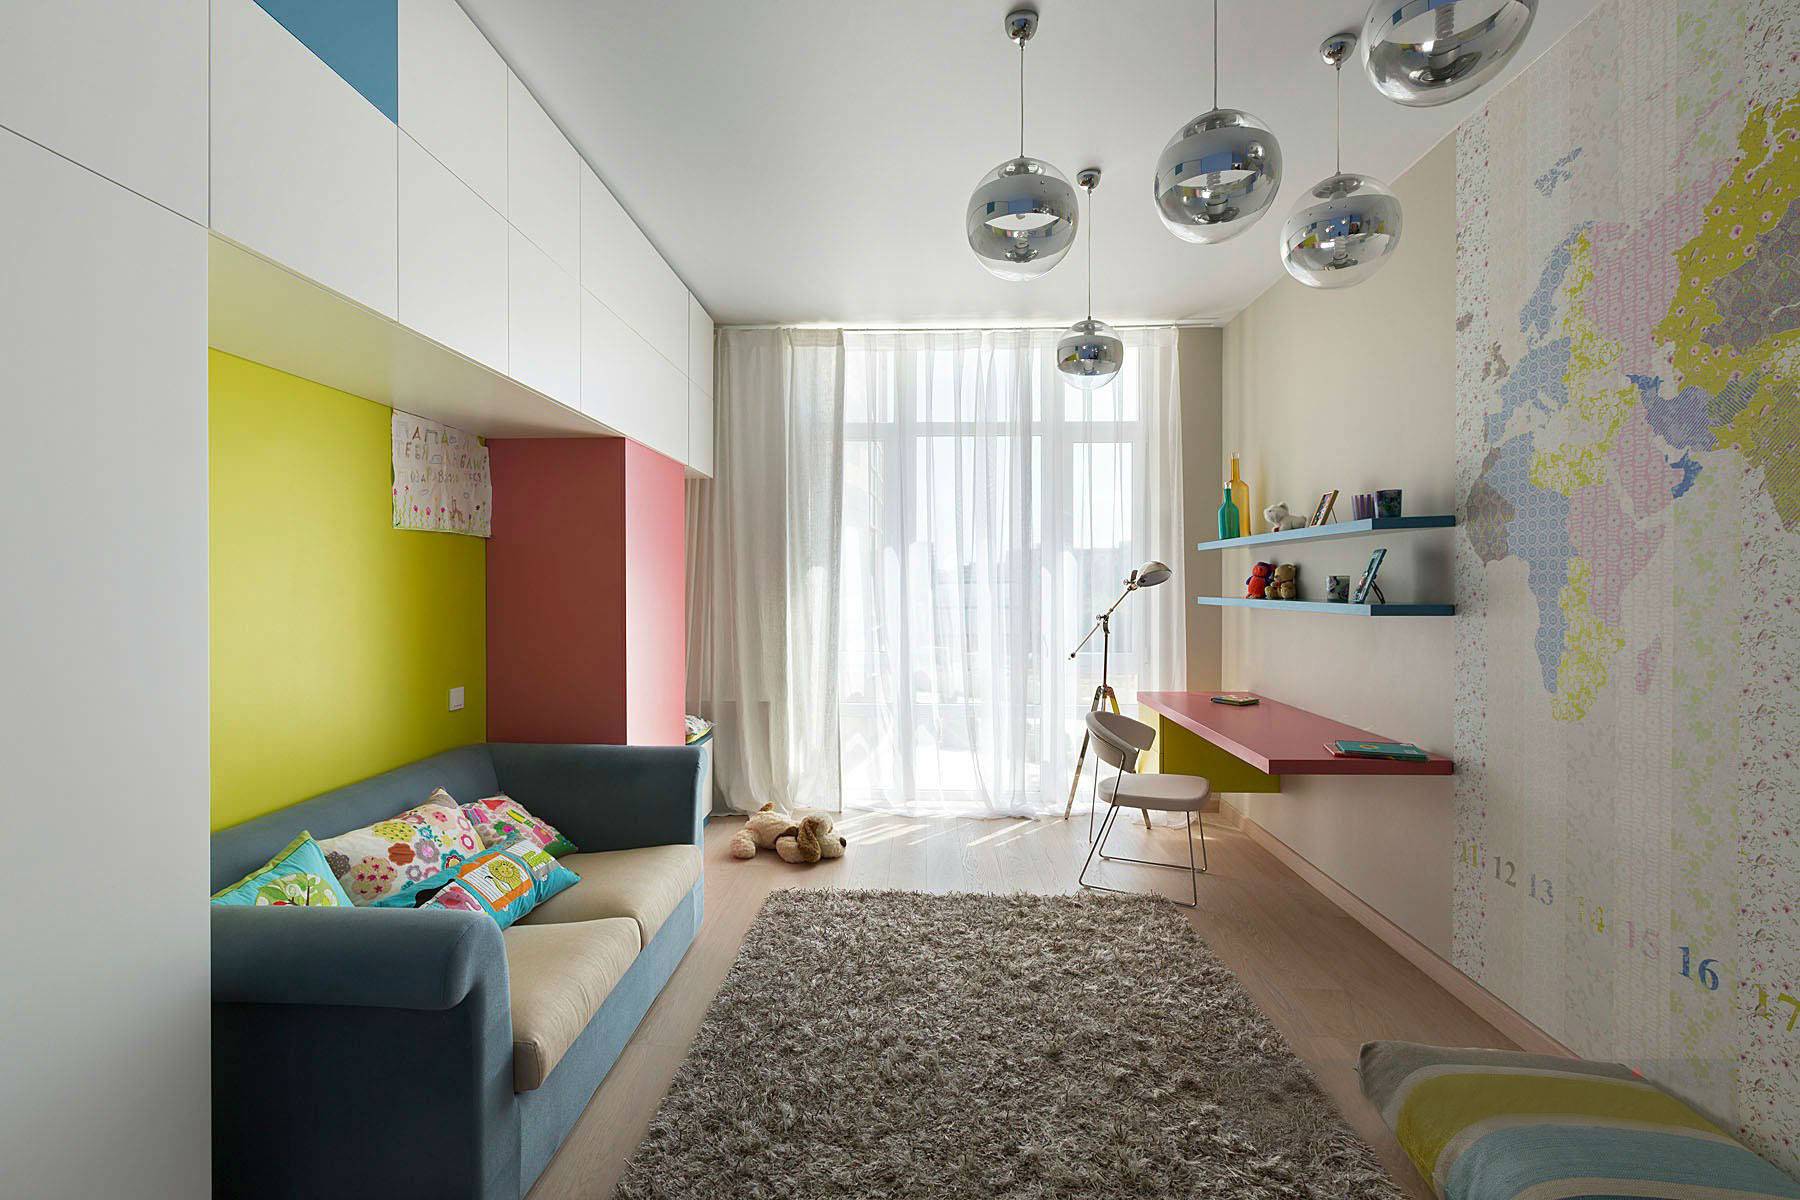 100 лучших идей: дизайн комнаты в хрущевке, стильный интерьер на фото